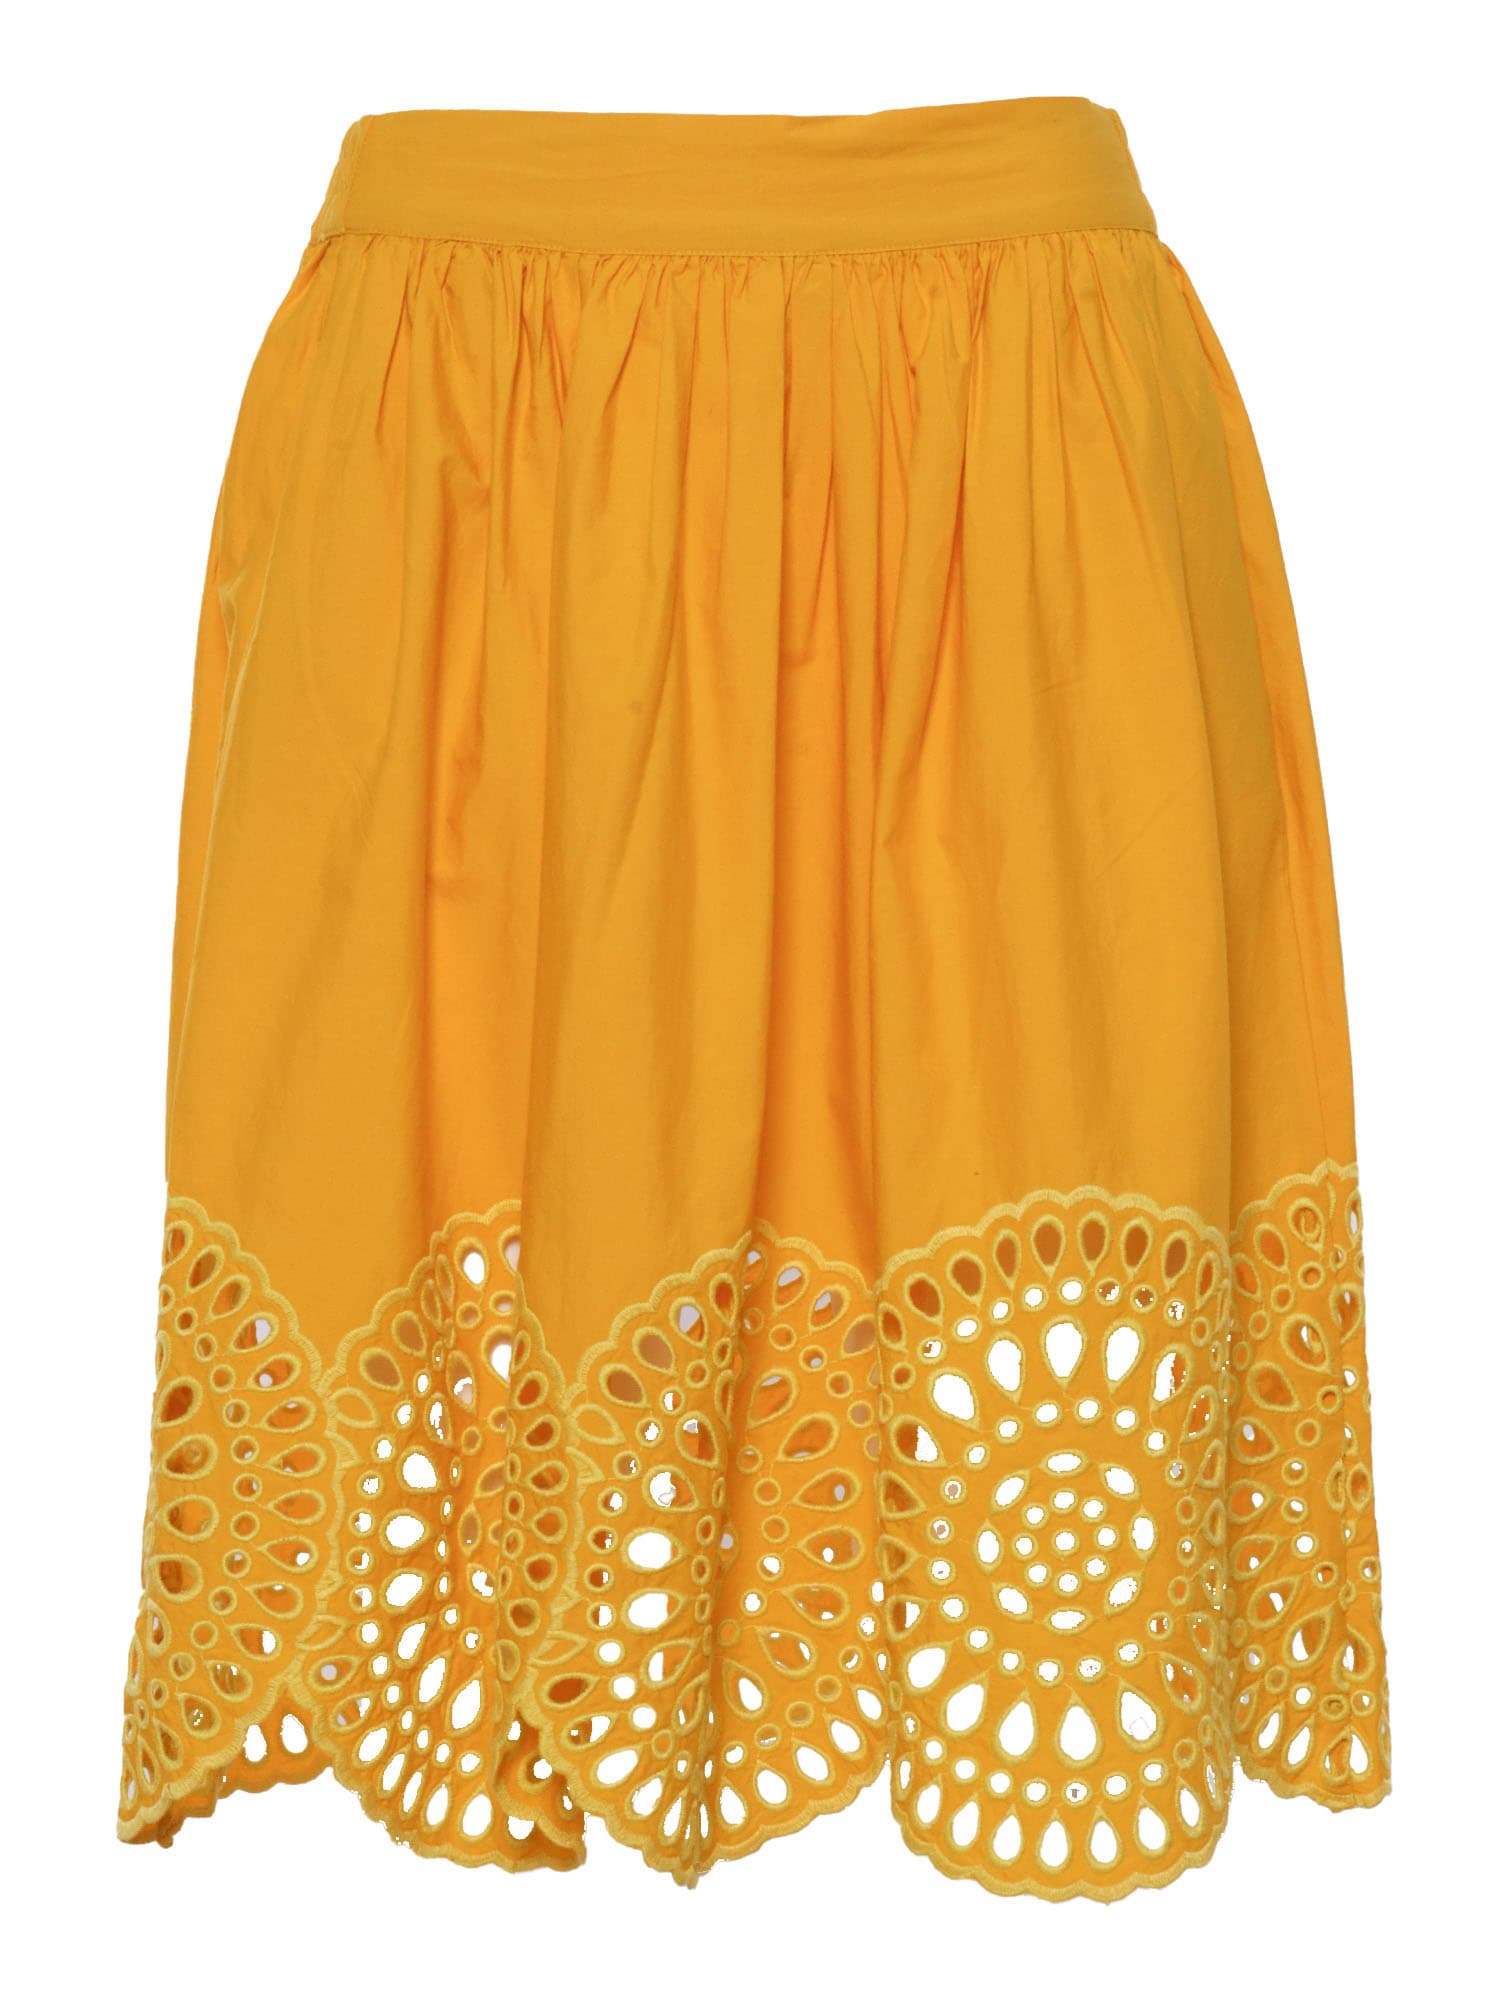 Stella Mccartney Kids' Yellow Skirt With Lace